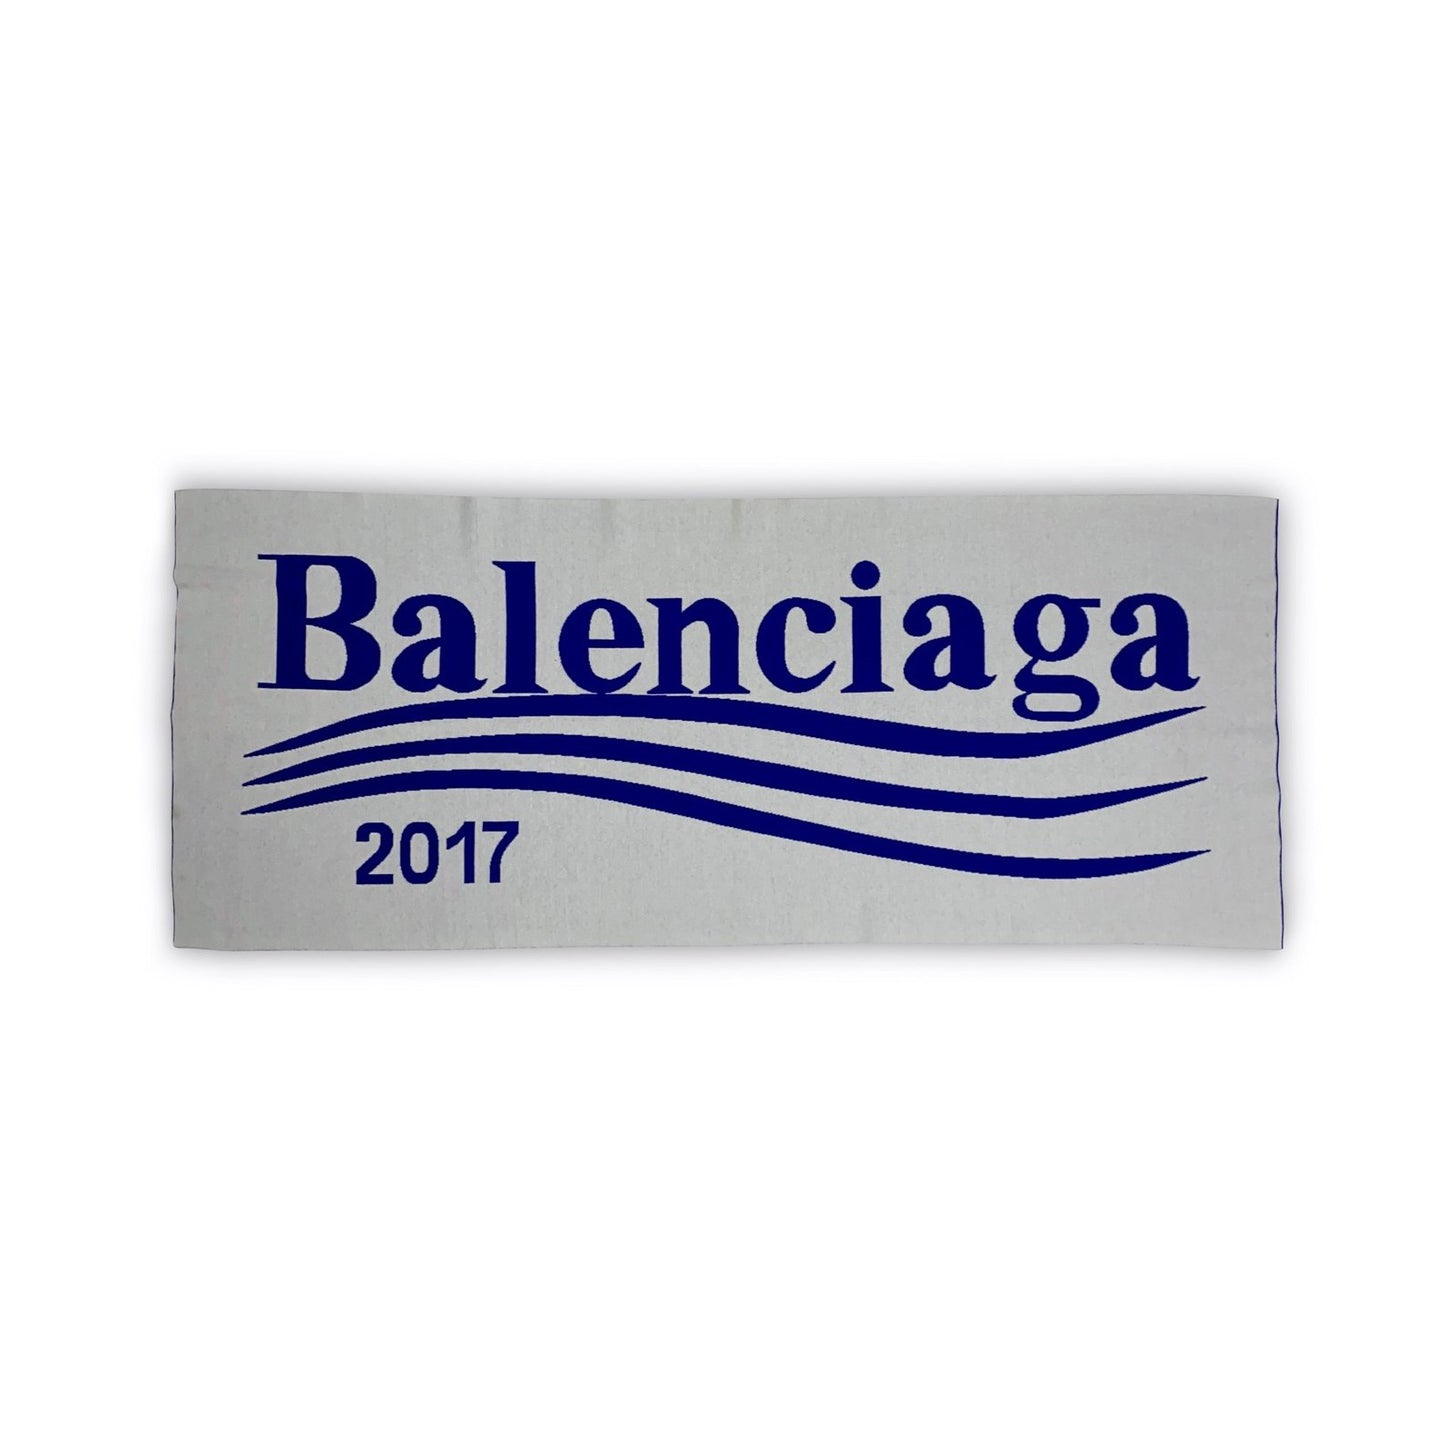 BALENCIAGA 2017 Presidential Schal / Scarf